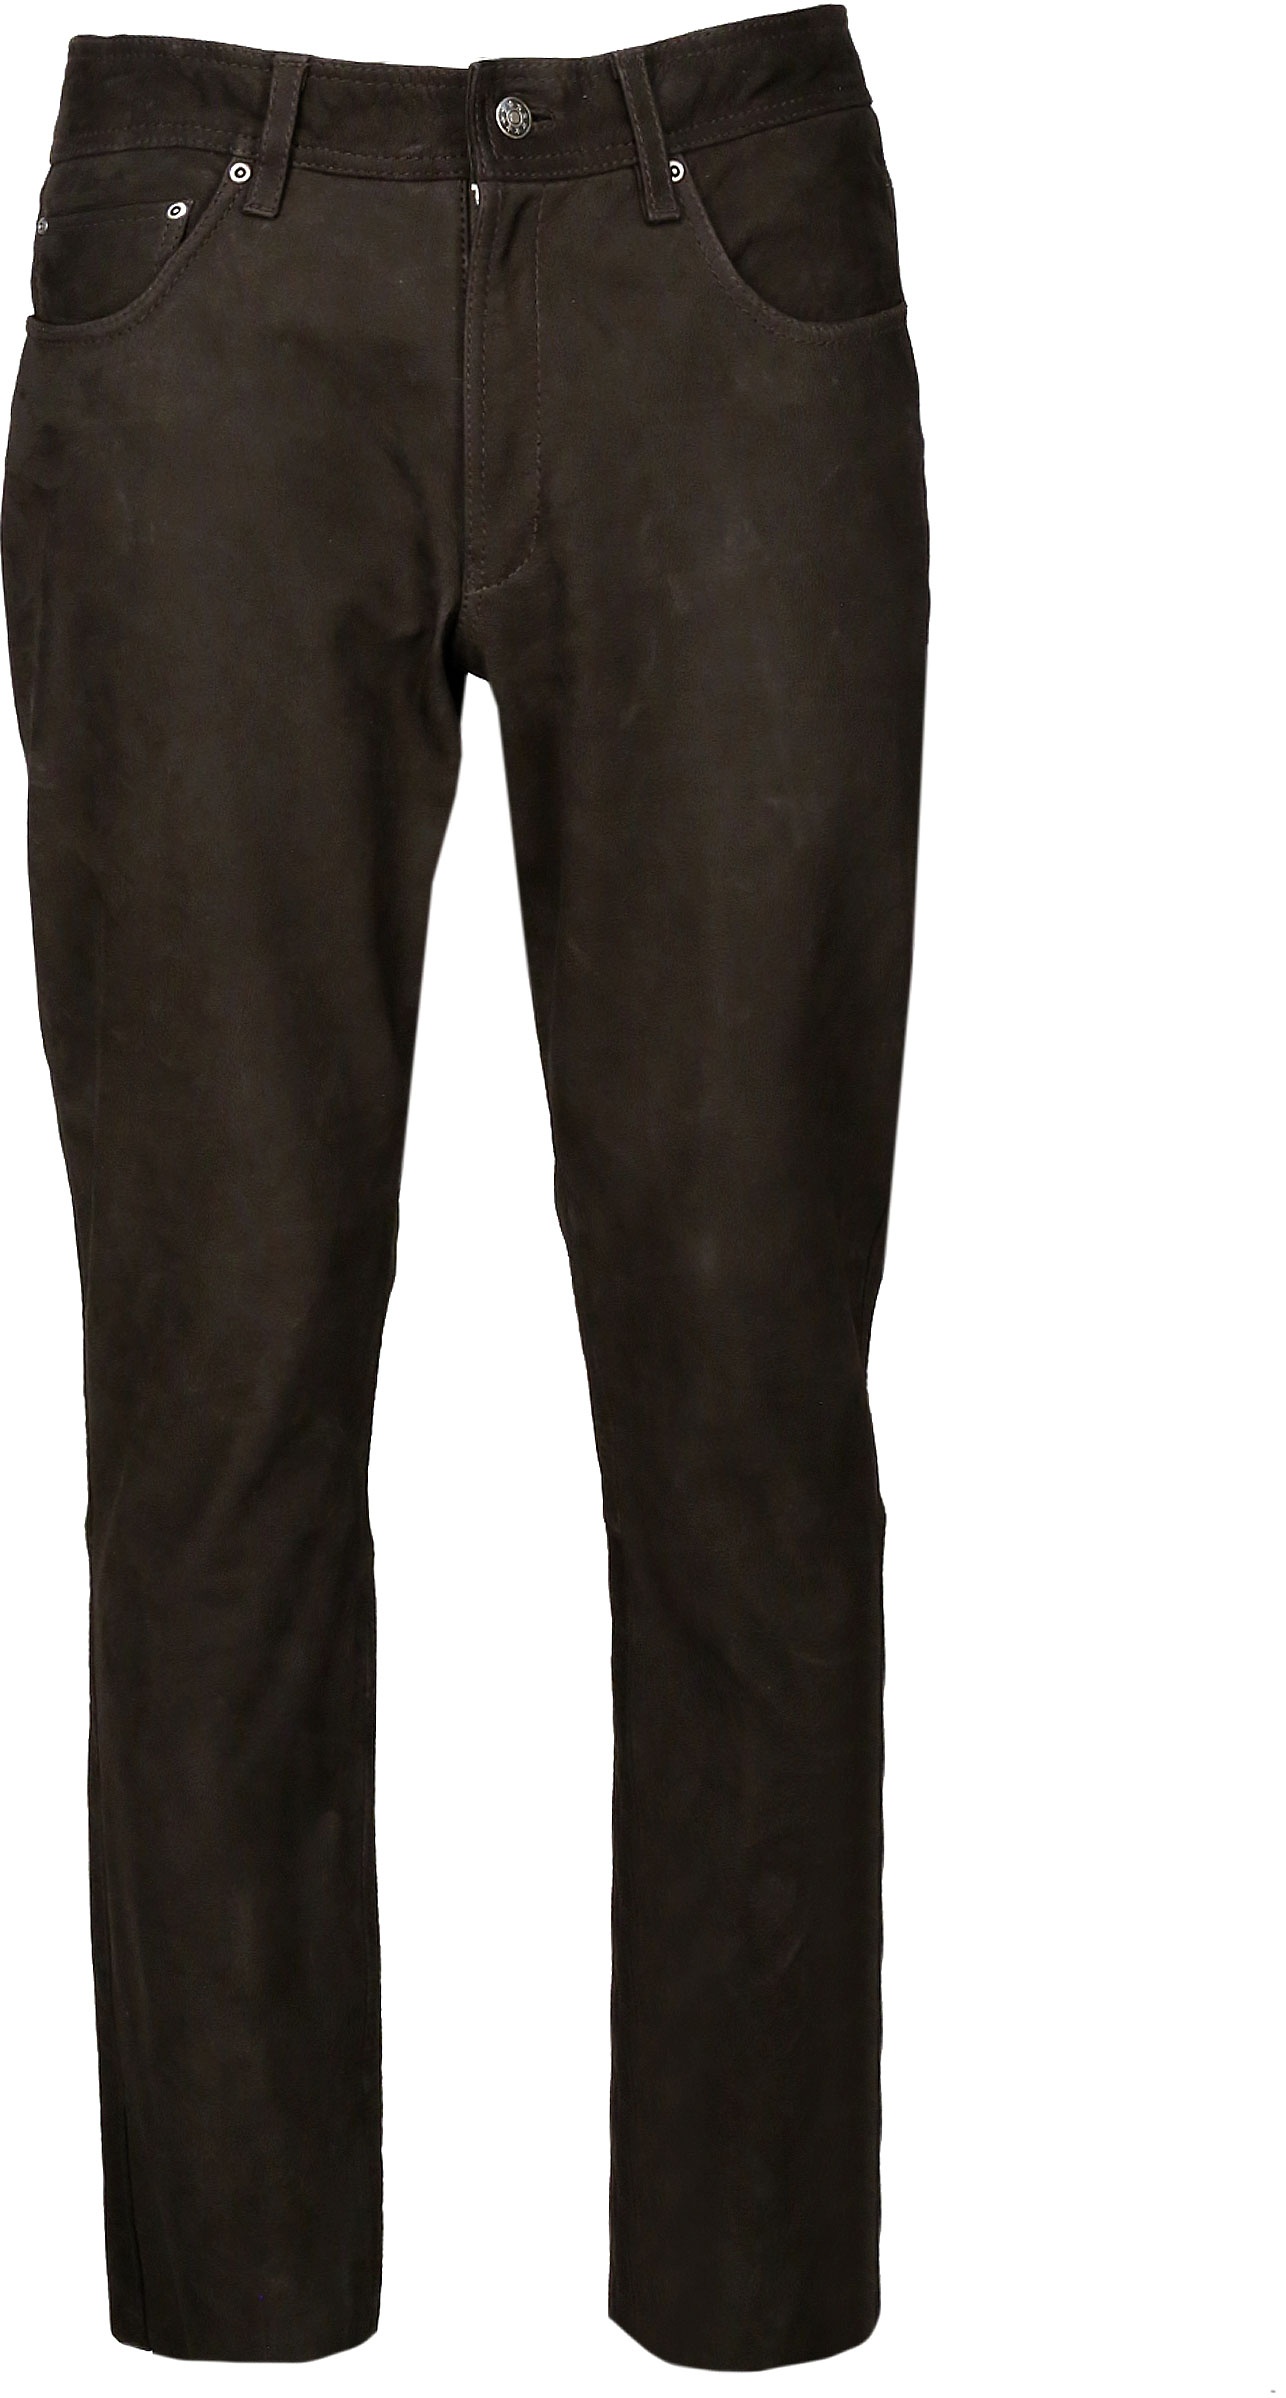 JCC Phill, pantalon en cuir - Marron Foncé - 56